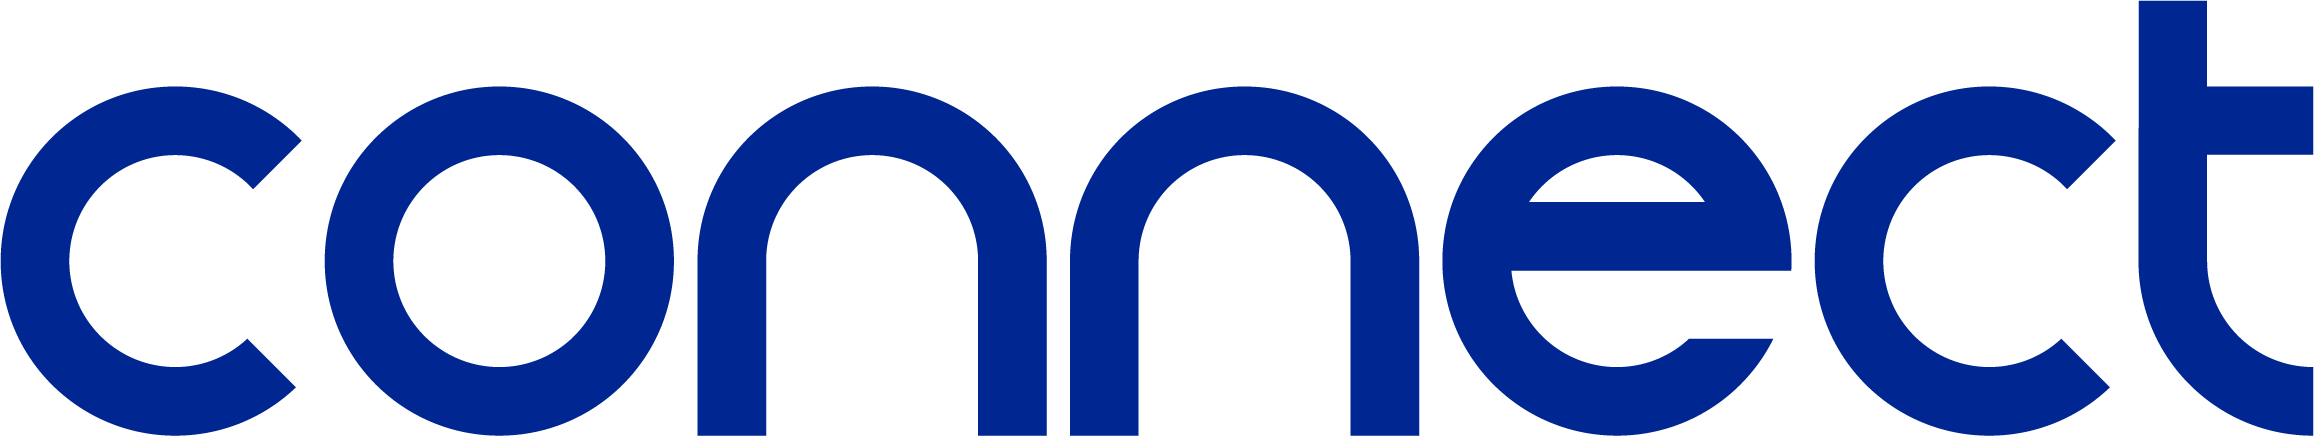 Logotipo do parceiro Connect Informações e Tecnologia S/A